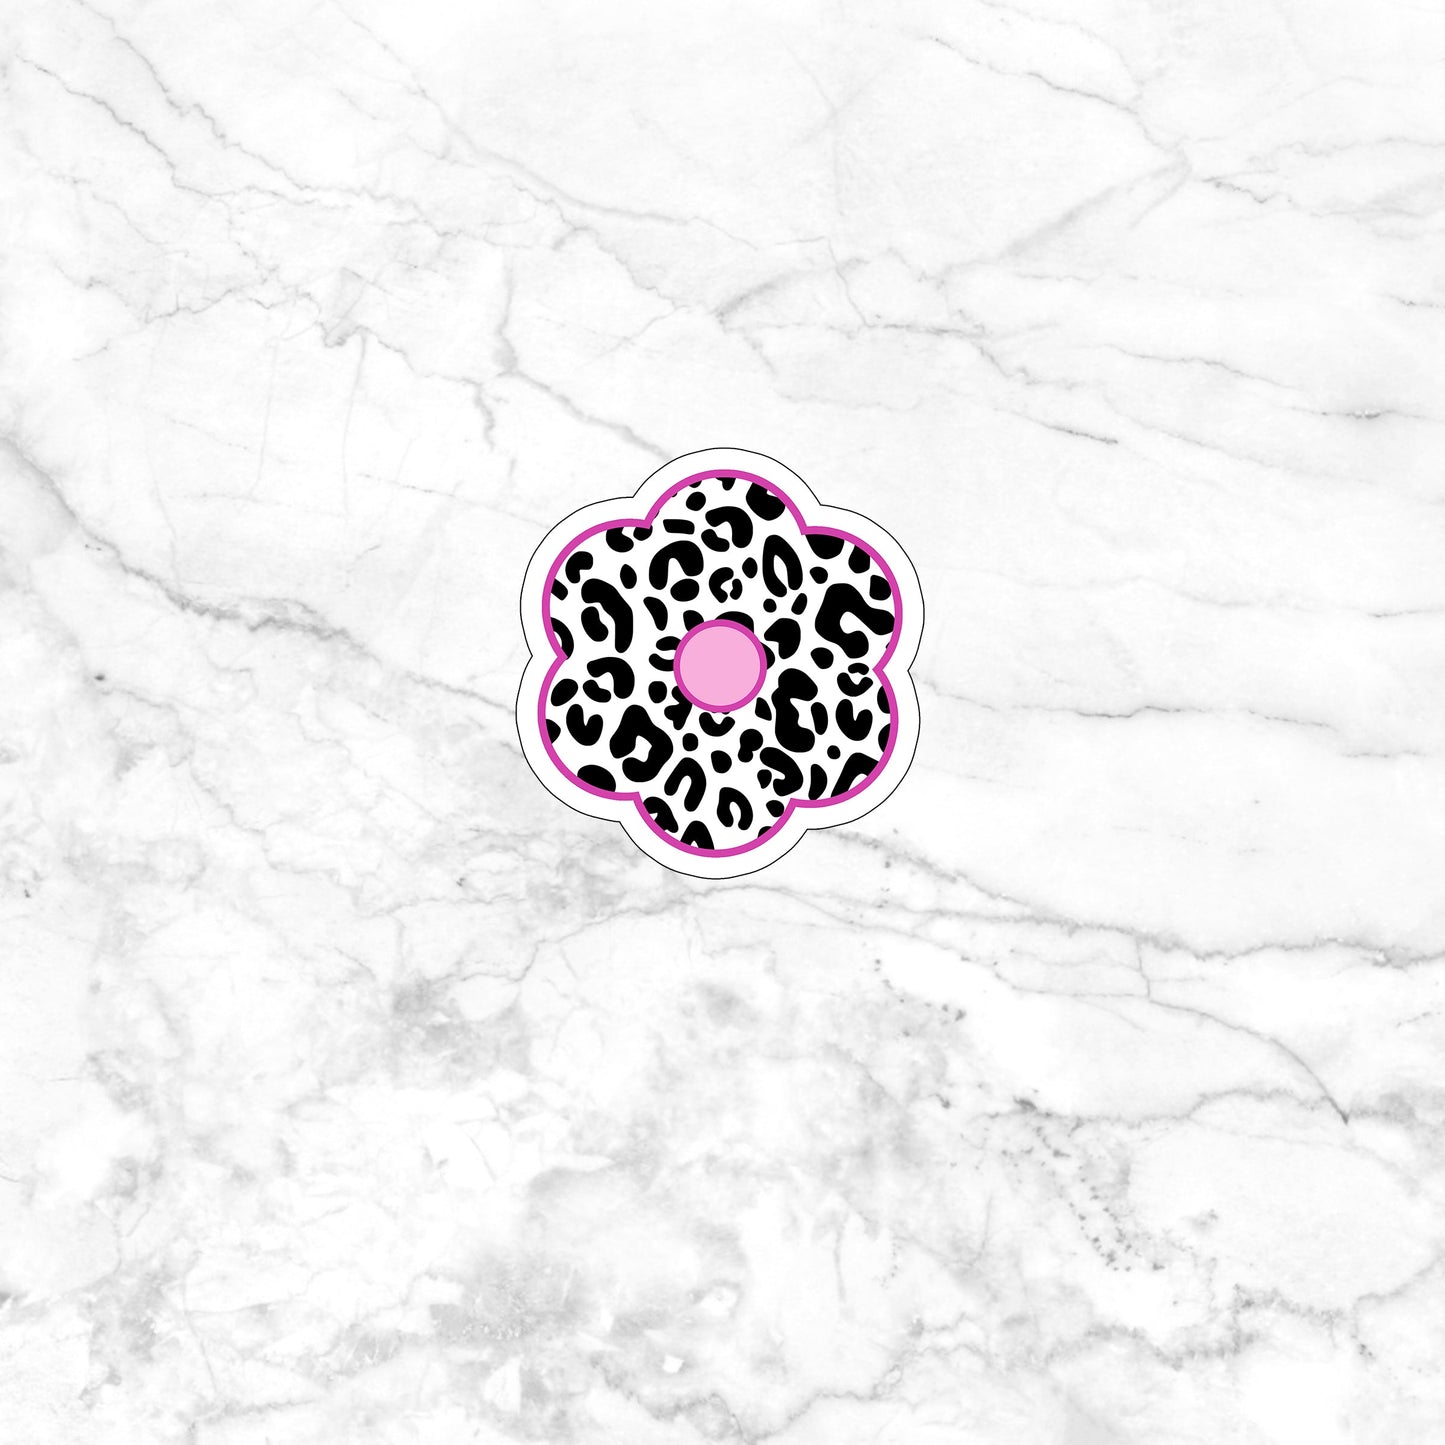 leopardflowerblackpink  Sticker,  Vinyl sticker, laptop sticker, Tablet sticker